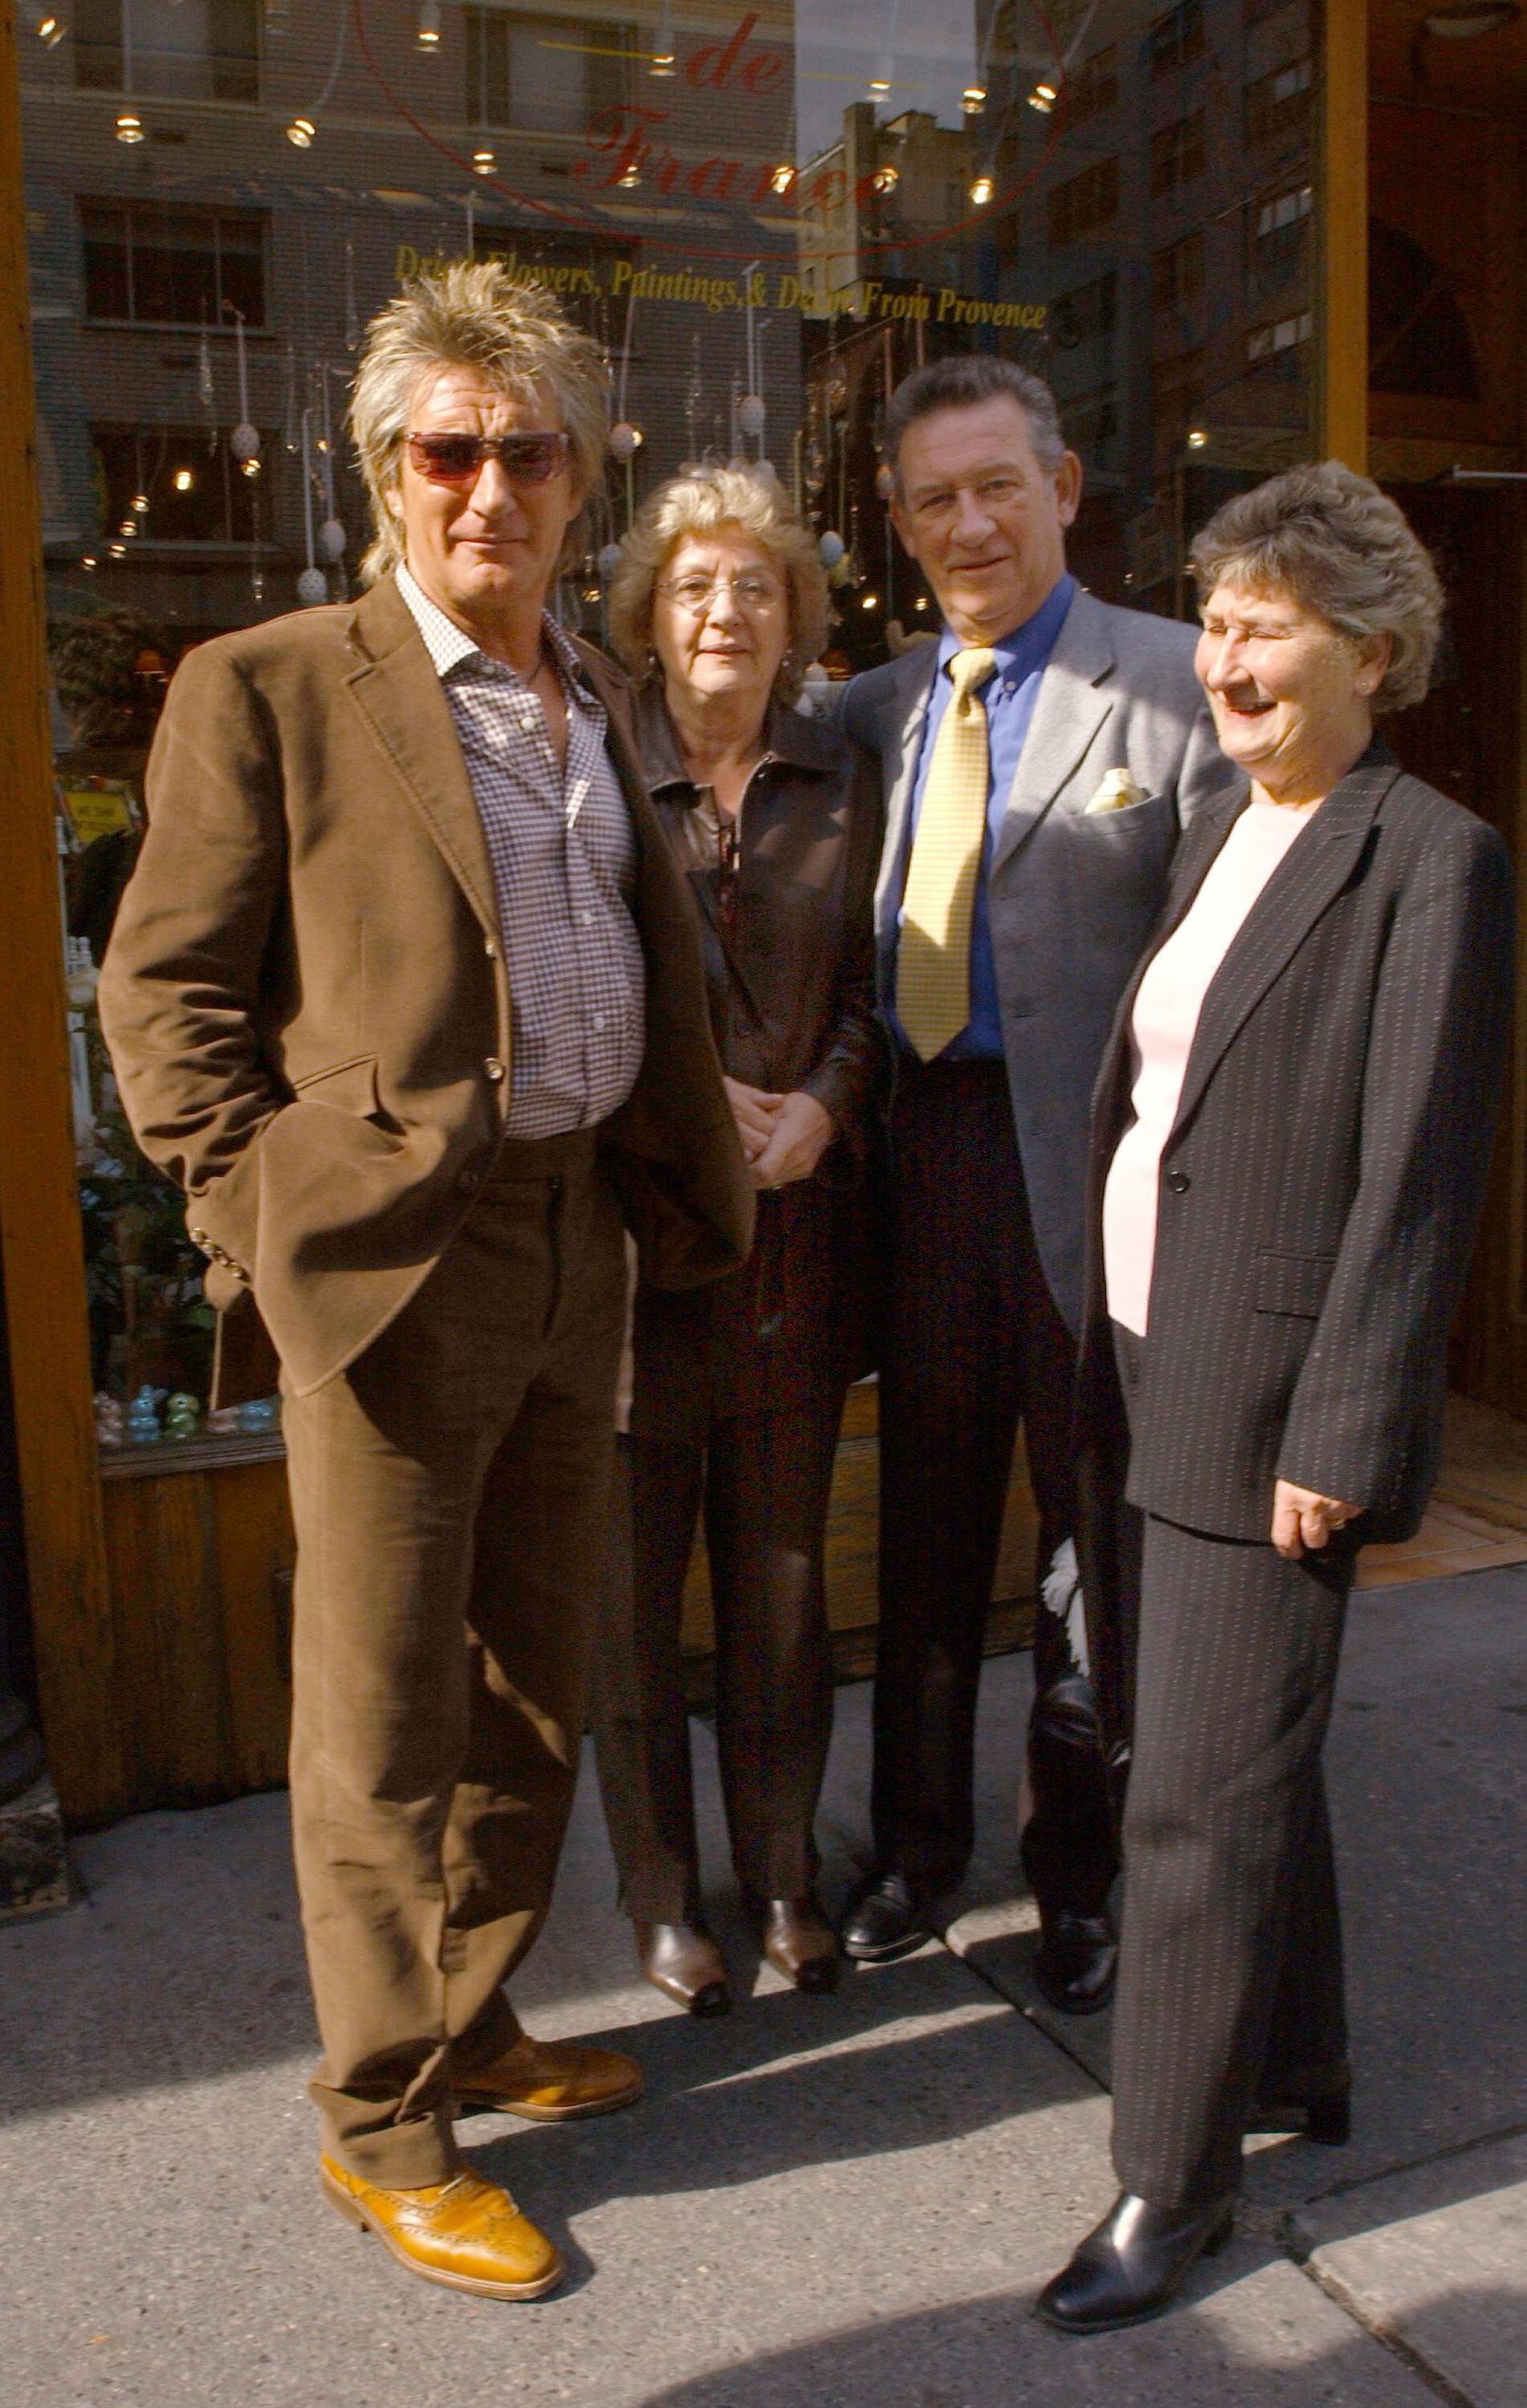  Rod Stewart com o irmão, Don, a mulher dele, Pat e a irmã dos dois, Mary (Foto: Getty Images)